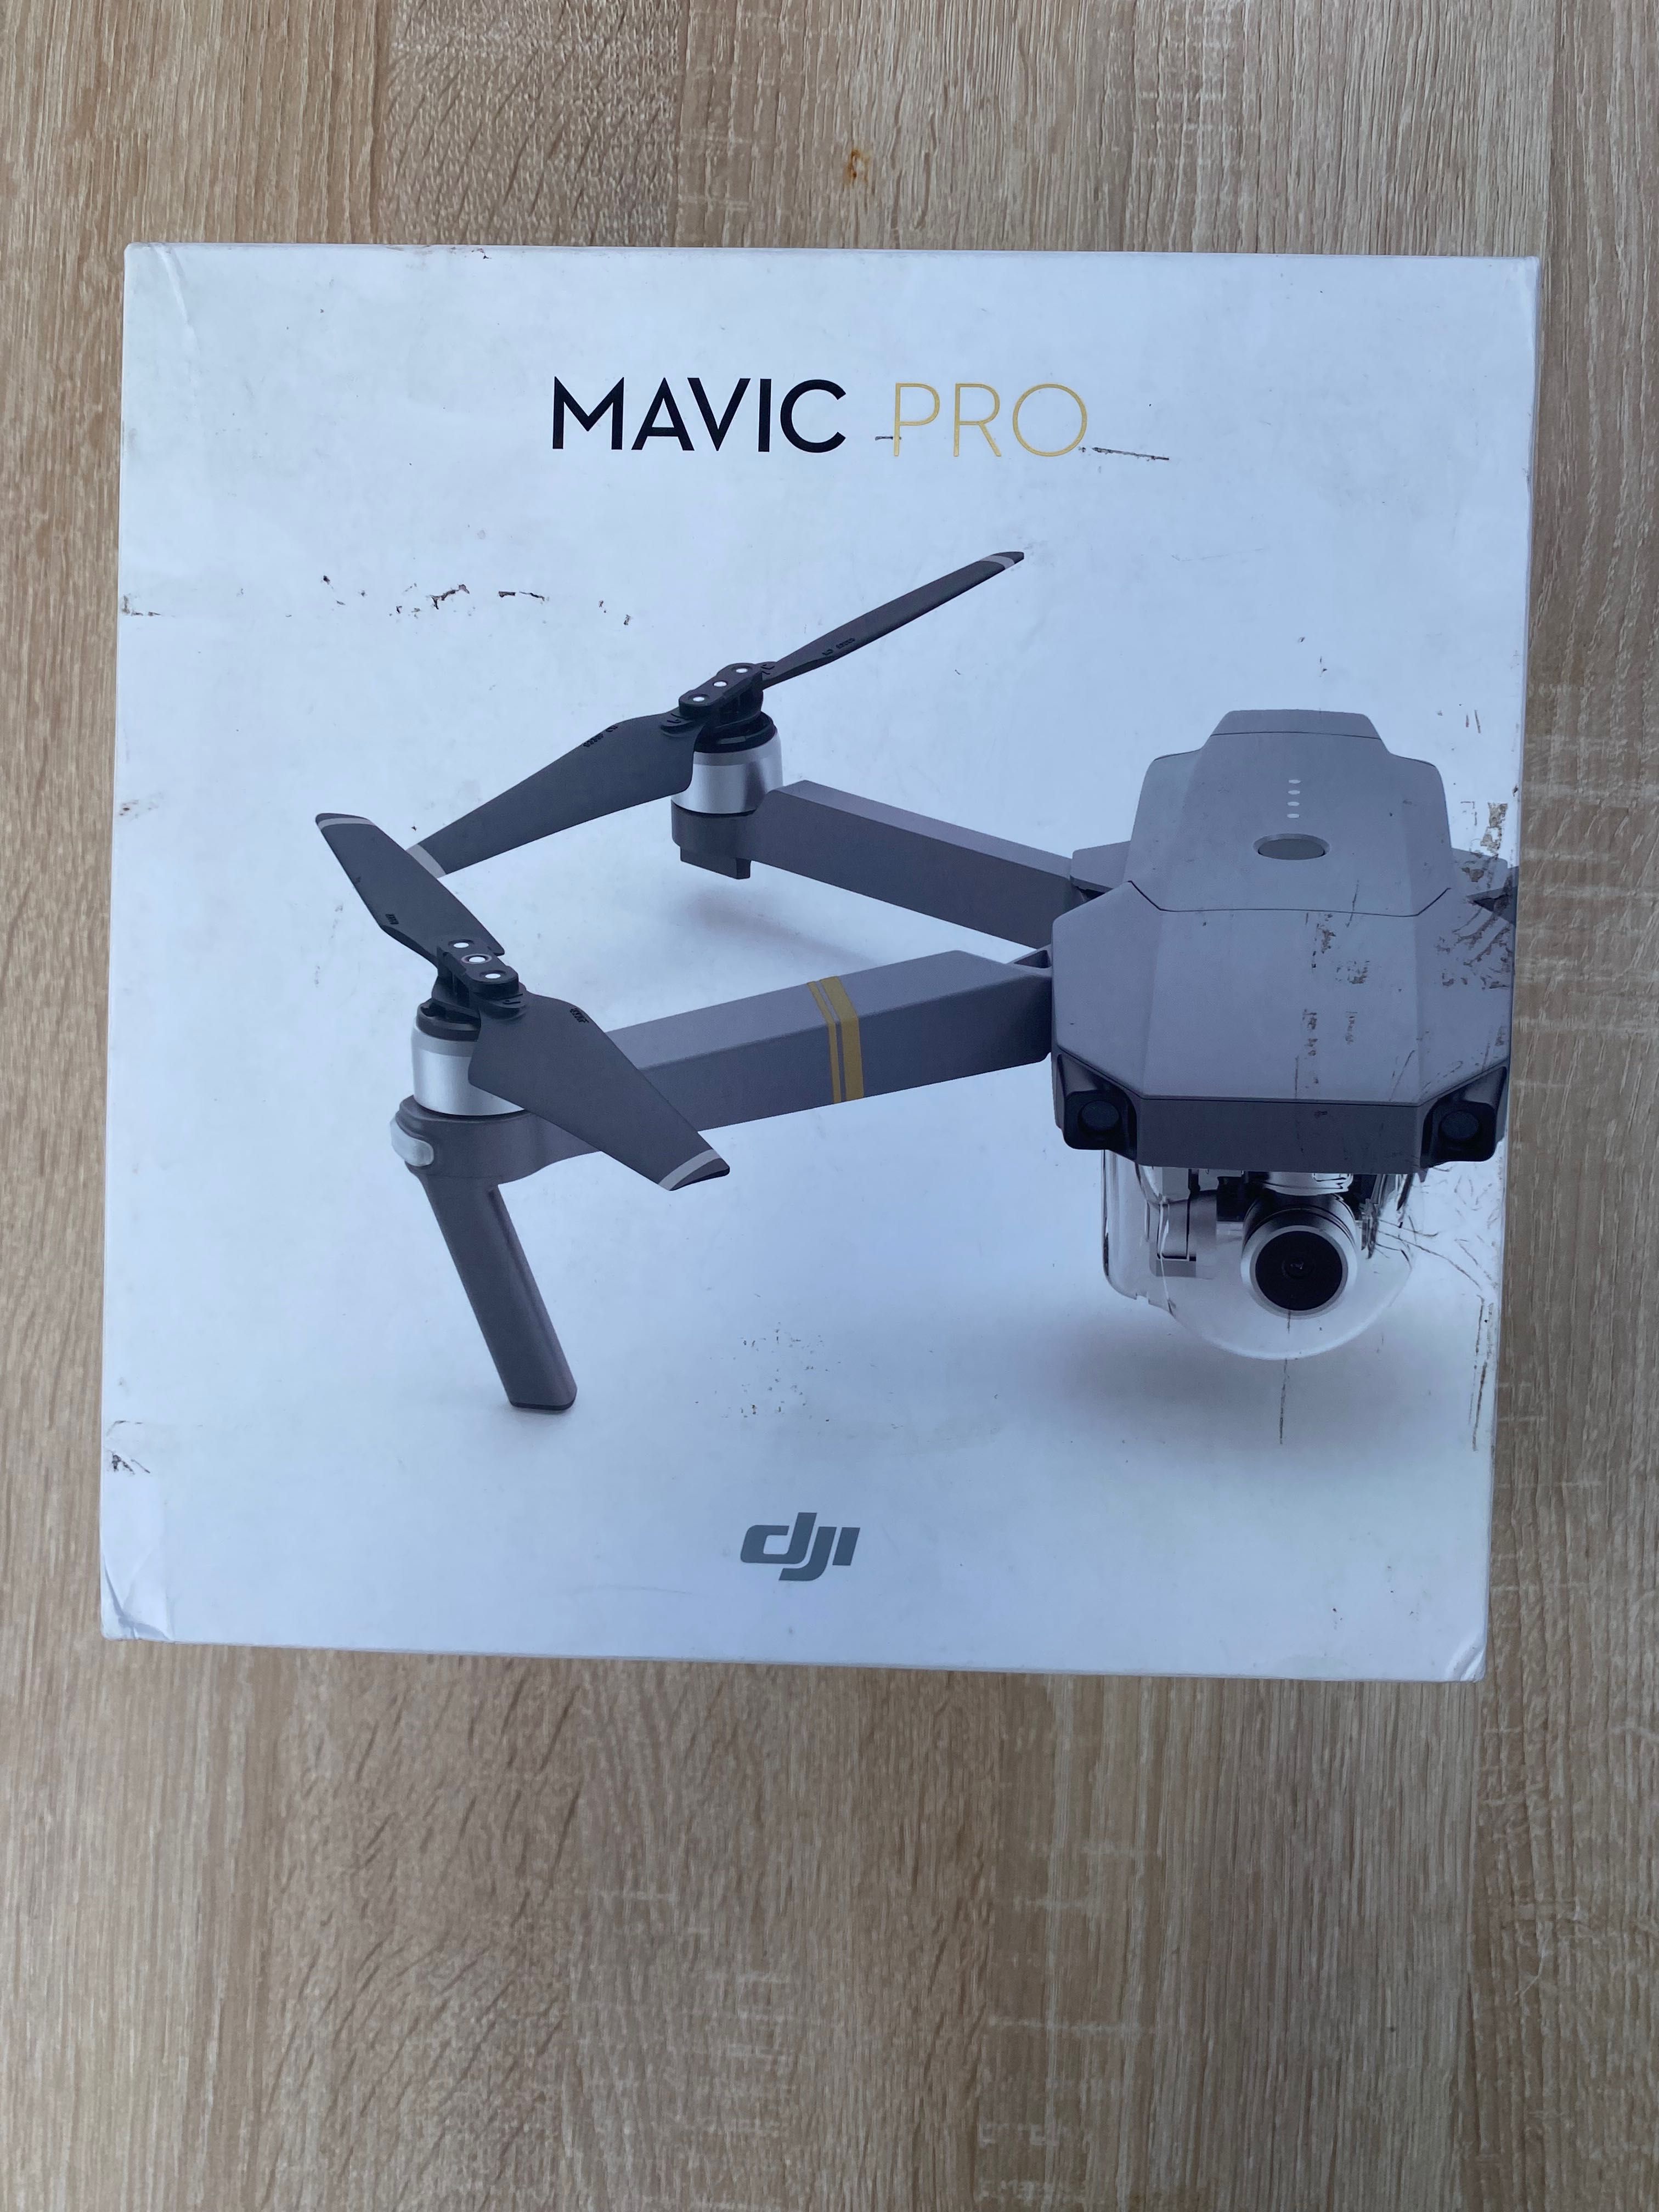 Venda de drone DJI Mavic pro